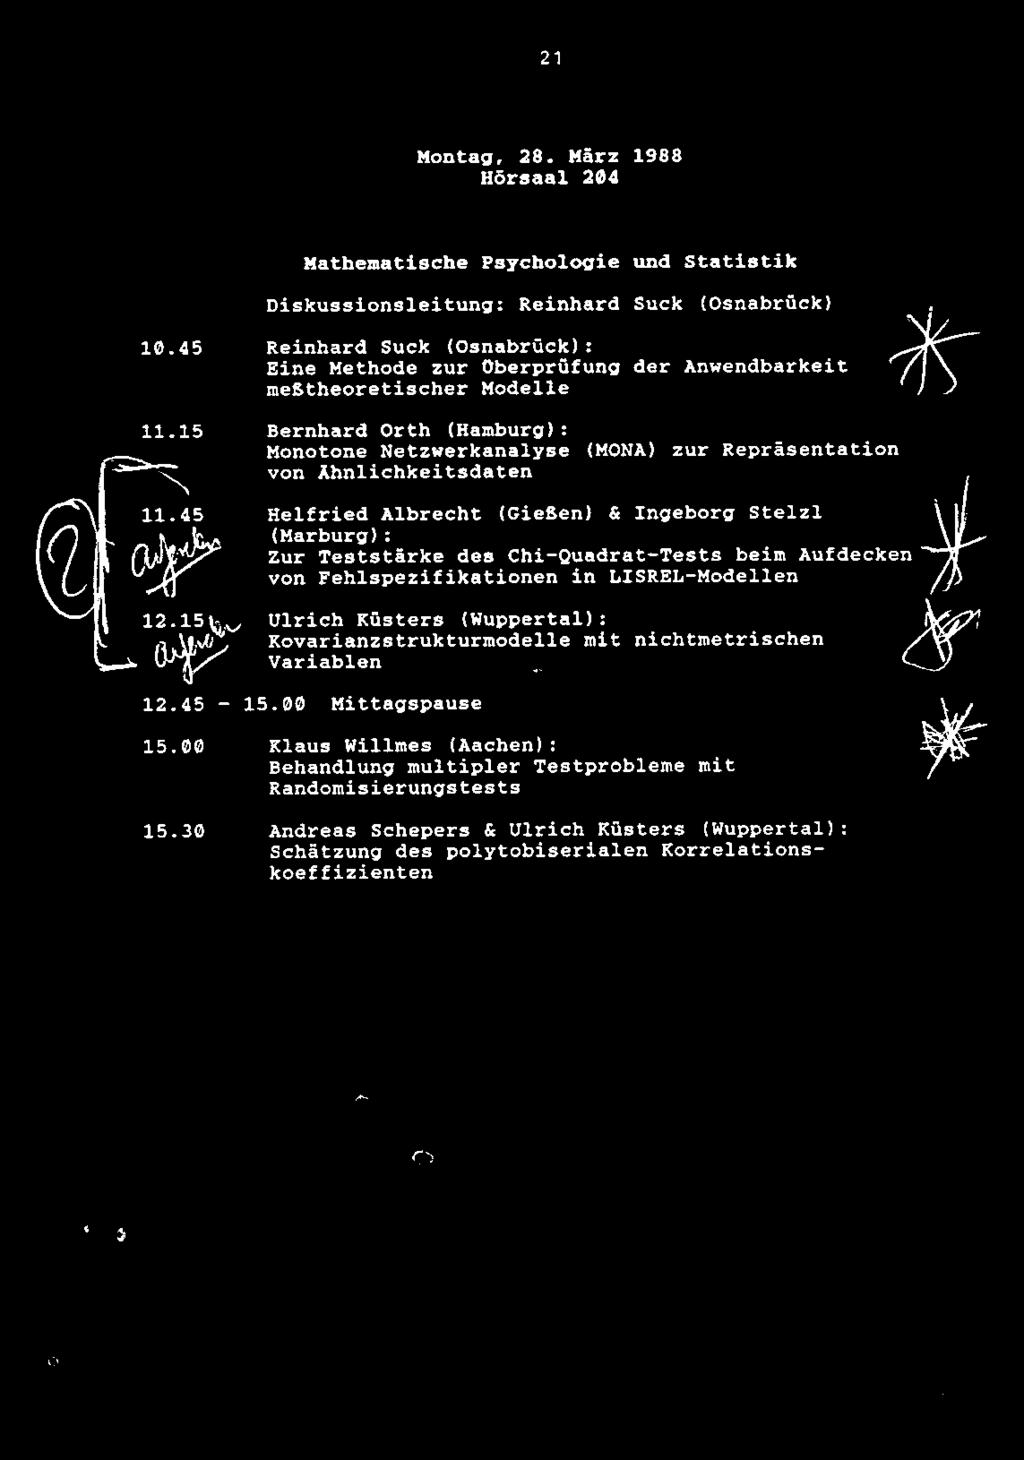 21 Montag, 28. Marz 1988 Hdrsaal 204 Mathenatische Psychologic und Statistik Diskussionsleitung: Reinhard Suck (Osnabruck) 10.45 11.15 11.45 12.15 12.45-15.00 15.